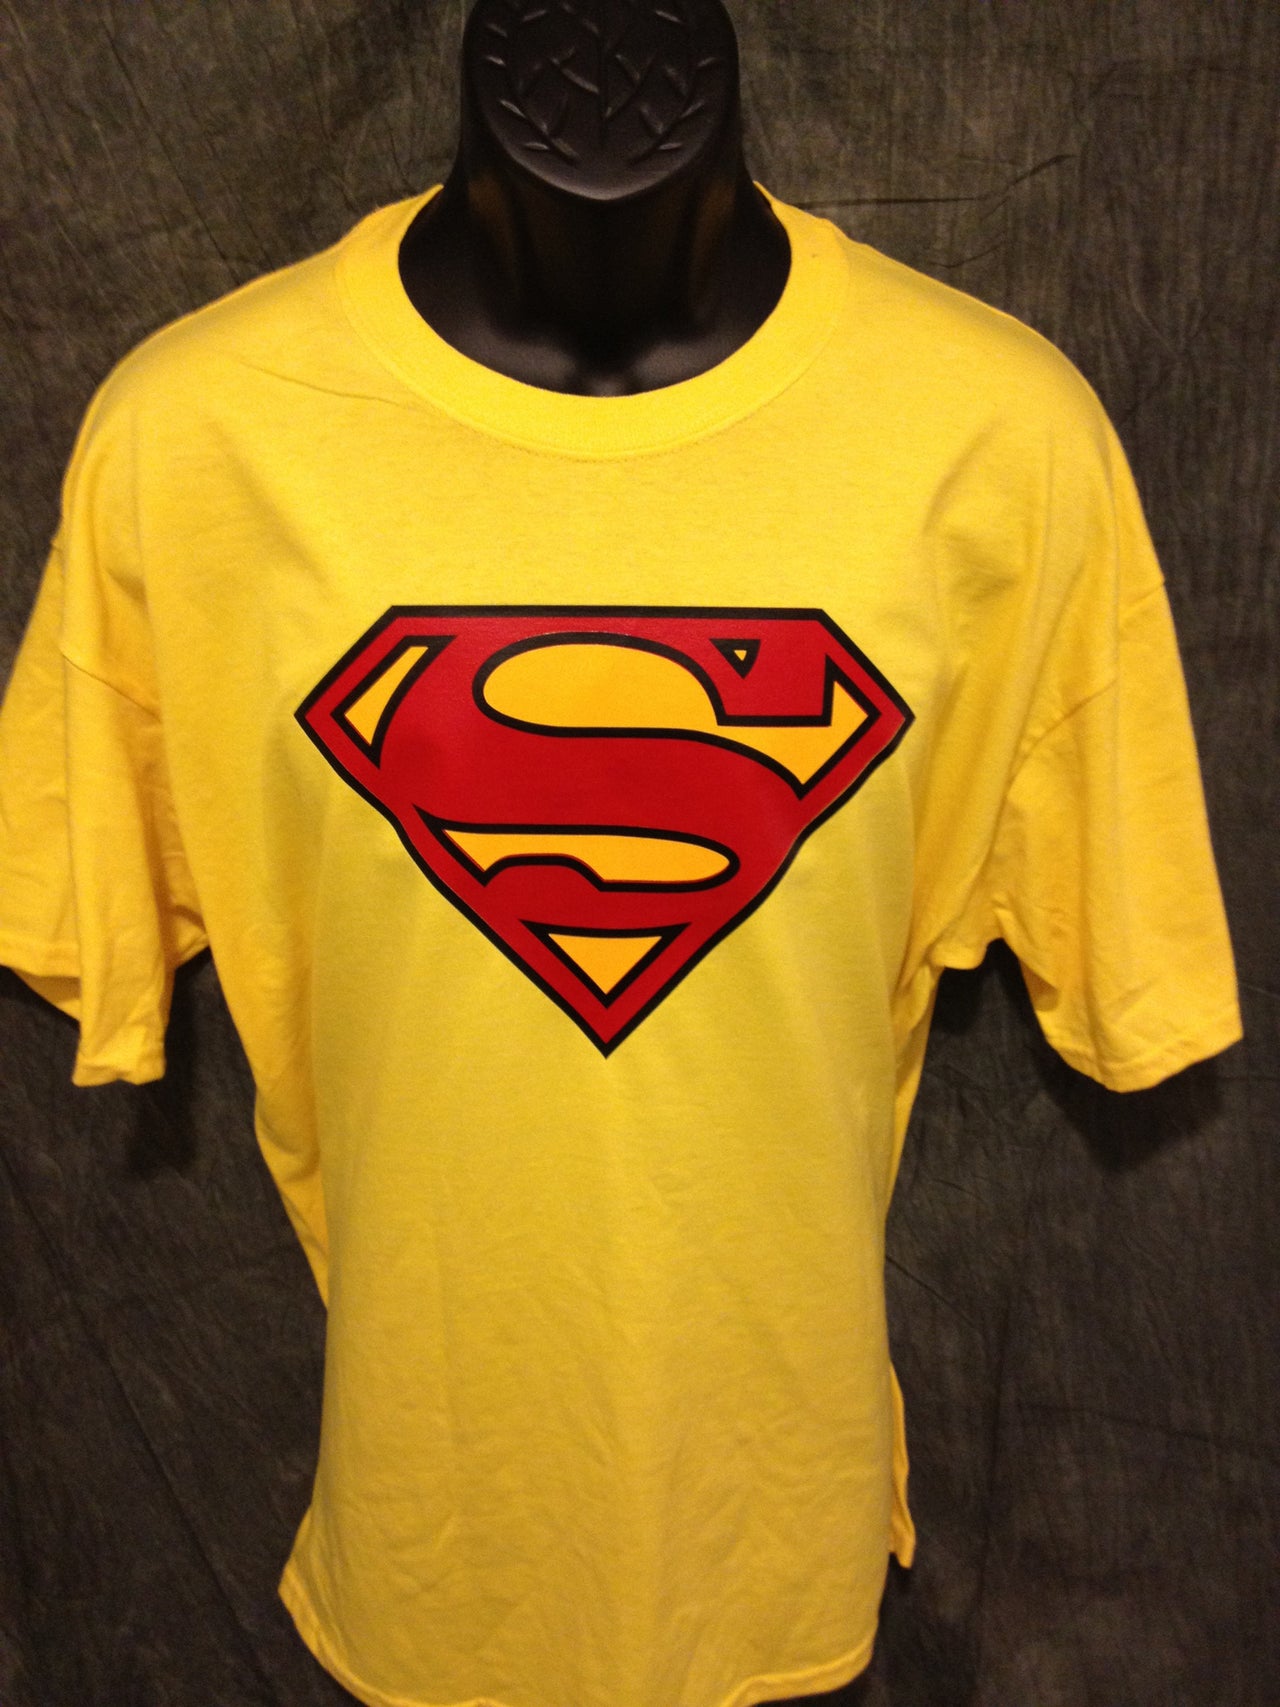 Superman Classic Logo Yellow Tshirt - TshirtNow.net - 2